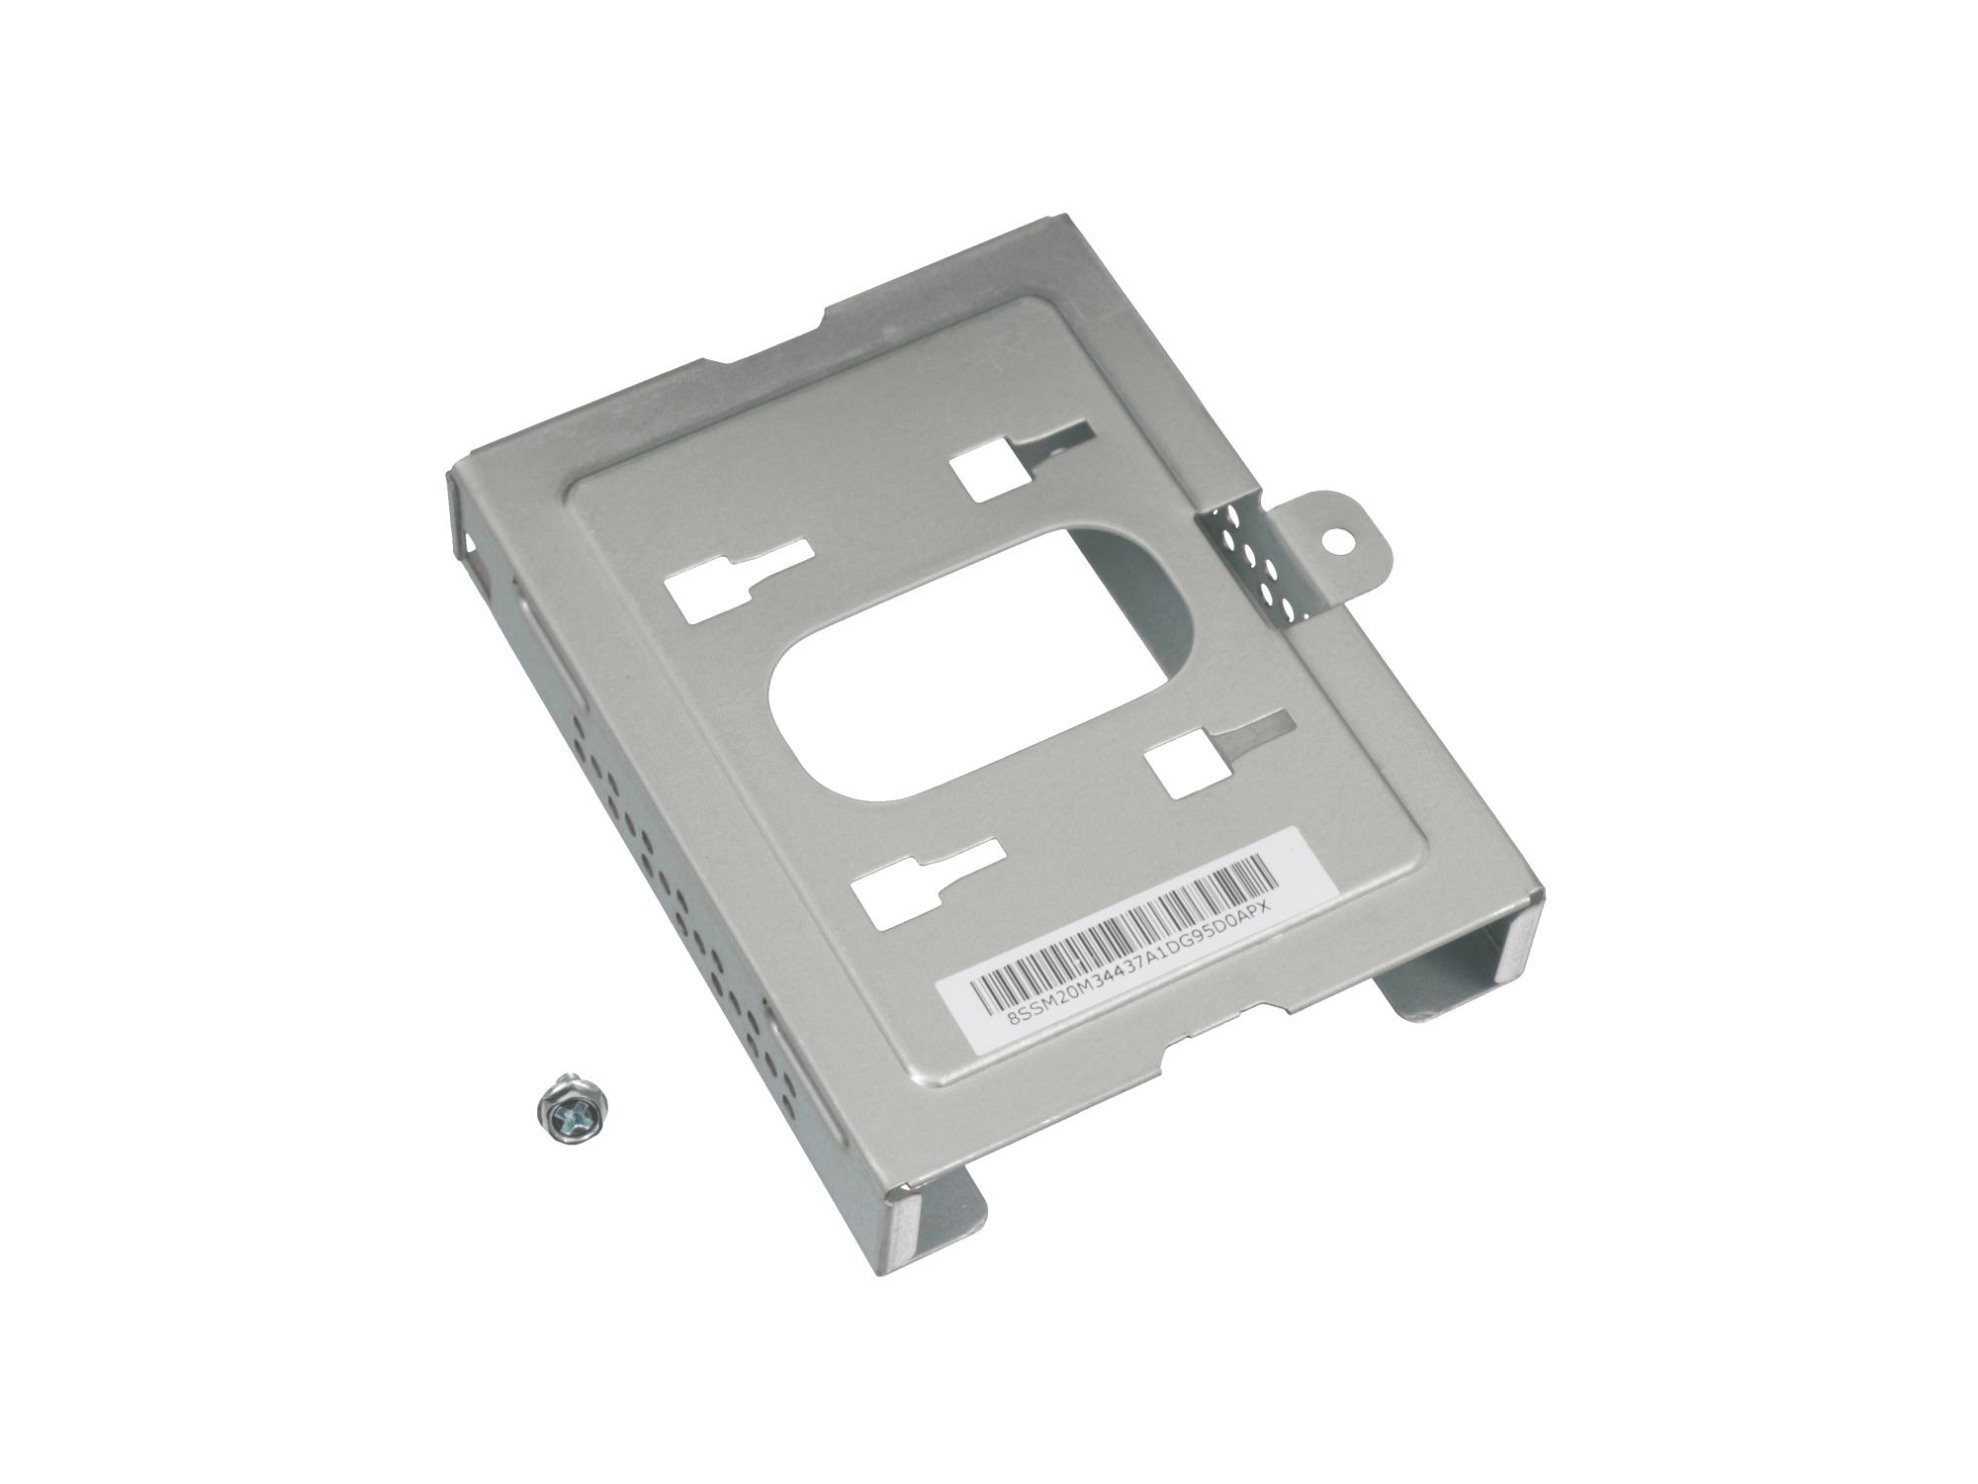 Festplatten-Einbaurahmen für den 1. Festplatten Schacht Original für Lenovo ThinkCentre M920t (10U1)